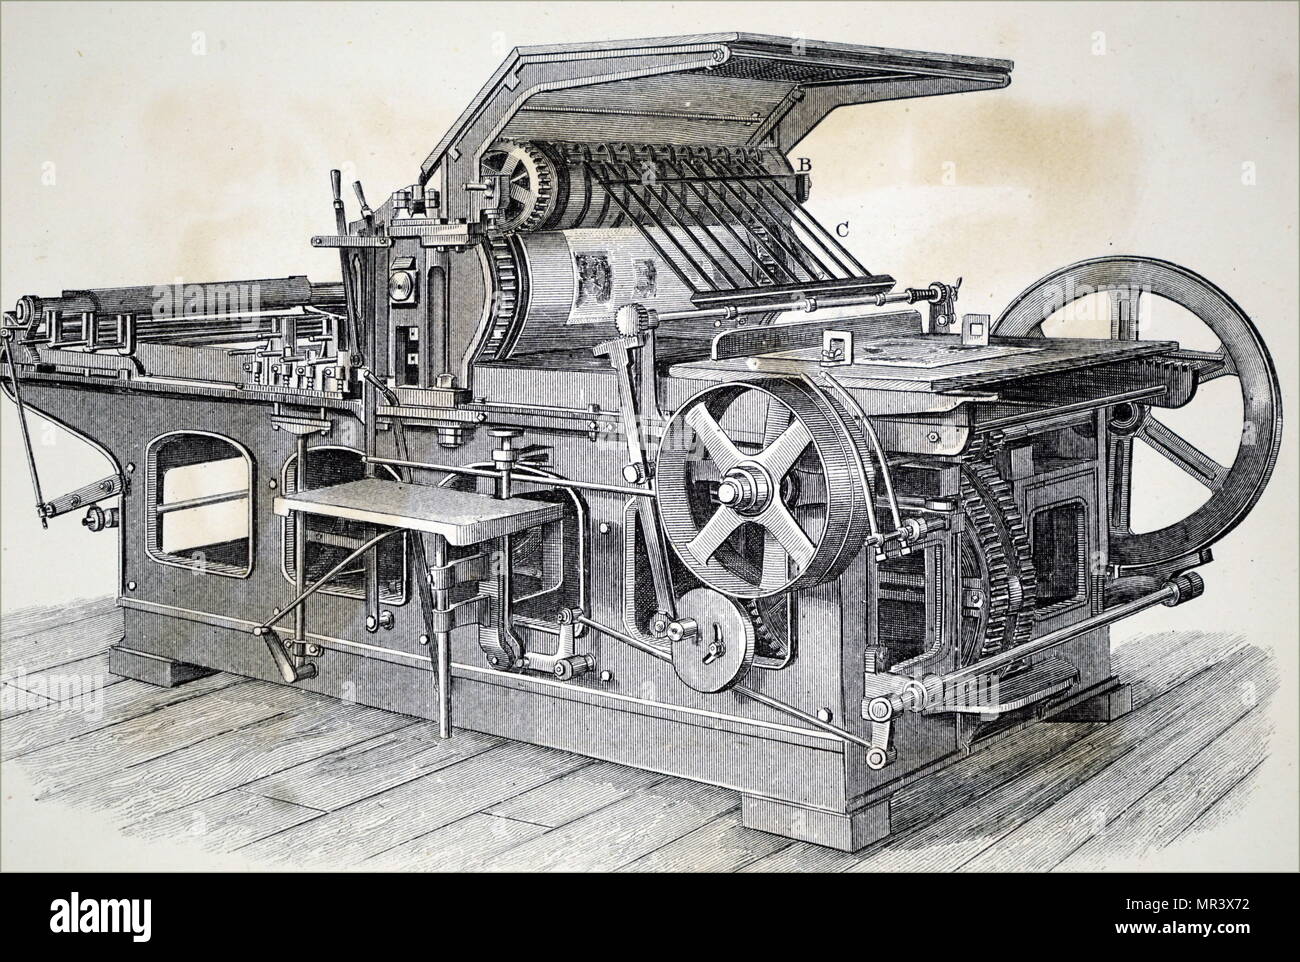 Grabado representando un solo cilindro, el perfeccionamiento de la máquina. Fecha del siglo XIX Foto de stock